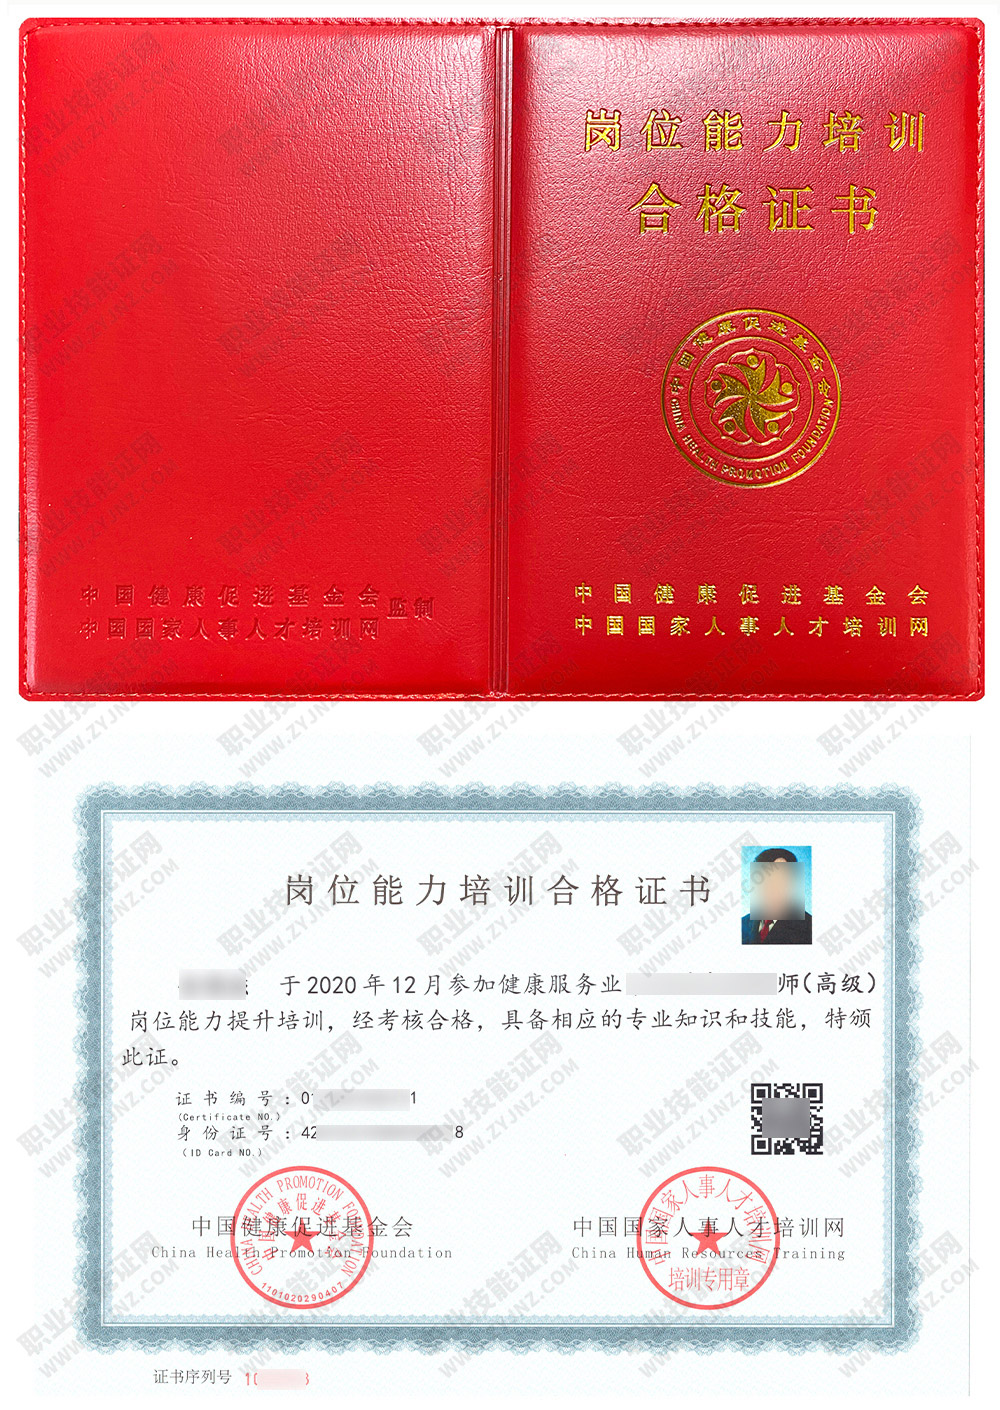 中国国家人事人才培训网 公共营养师 岗位能力培训合格证书